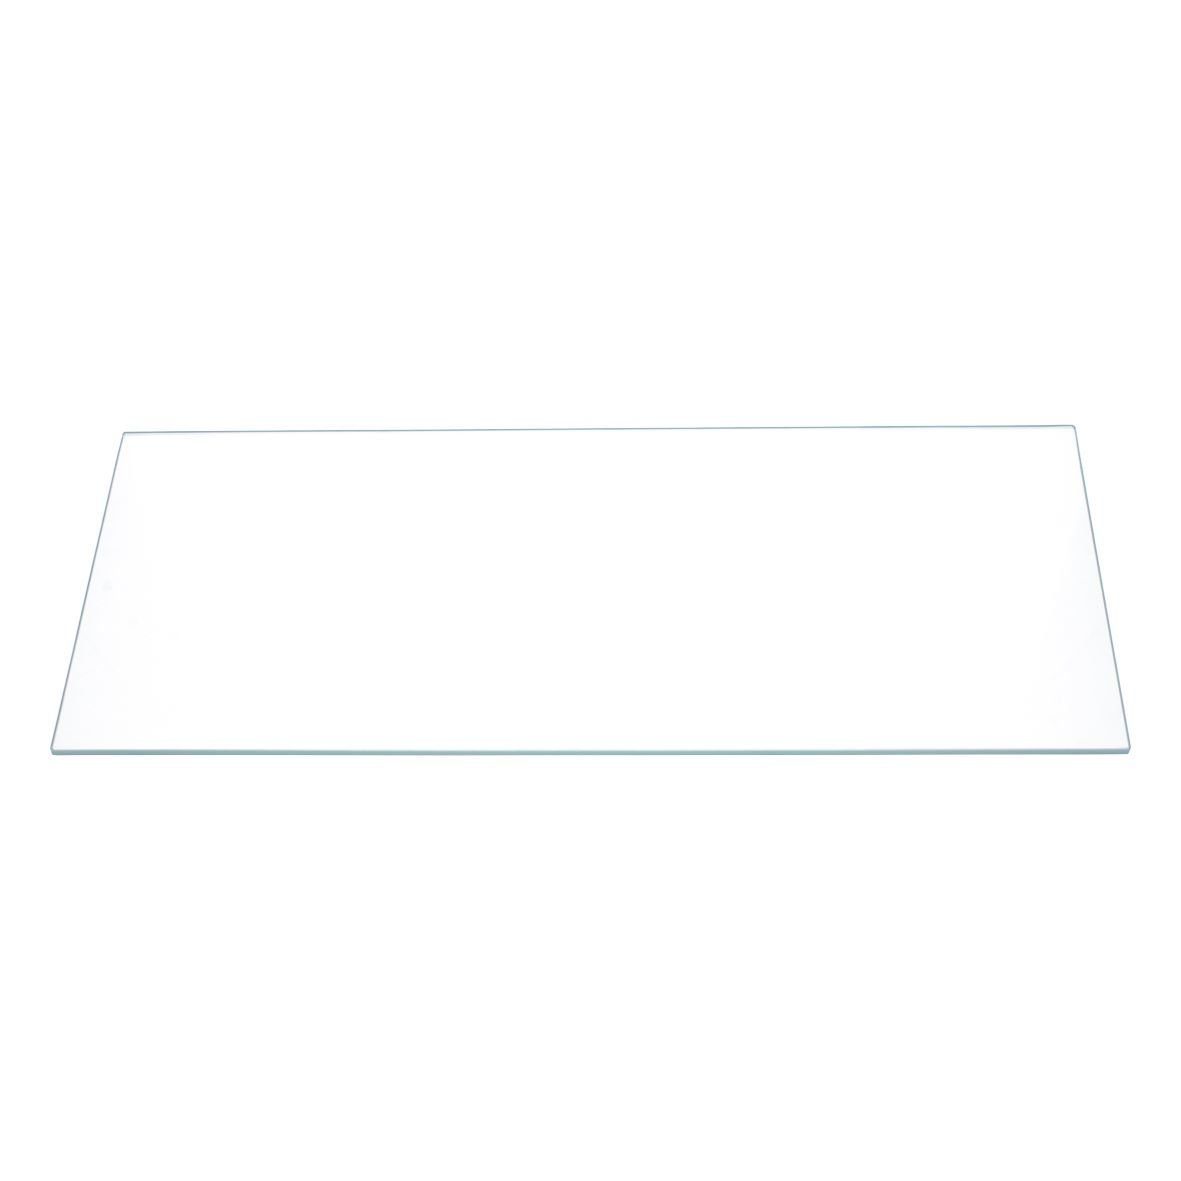 Gefriergerät 00743201 wie unten easyPART / Kühlschrank BOSCH Einlegeboden Glasplatte 400x160mm,